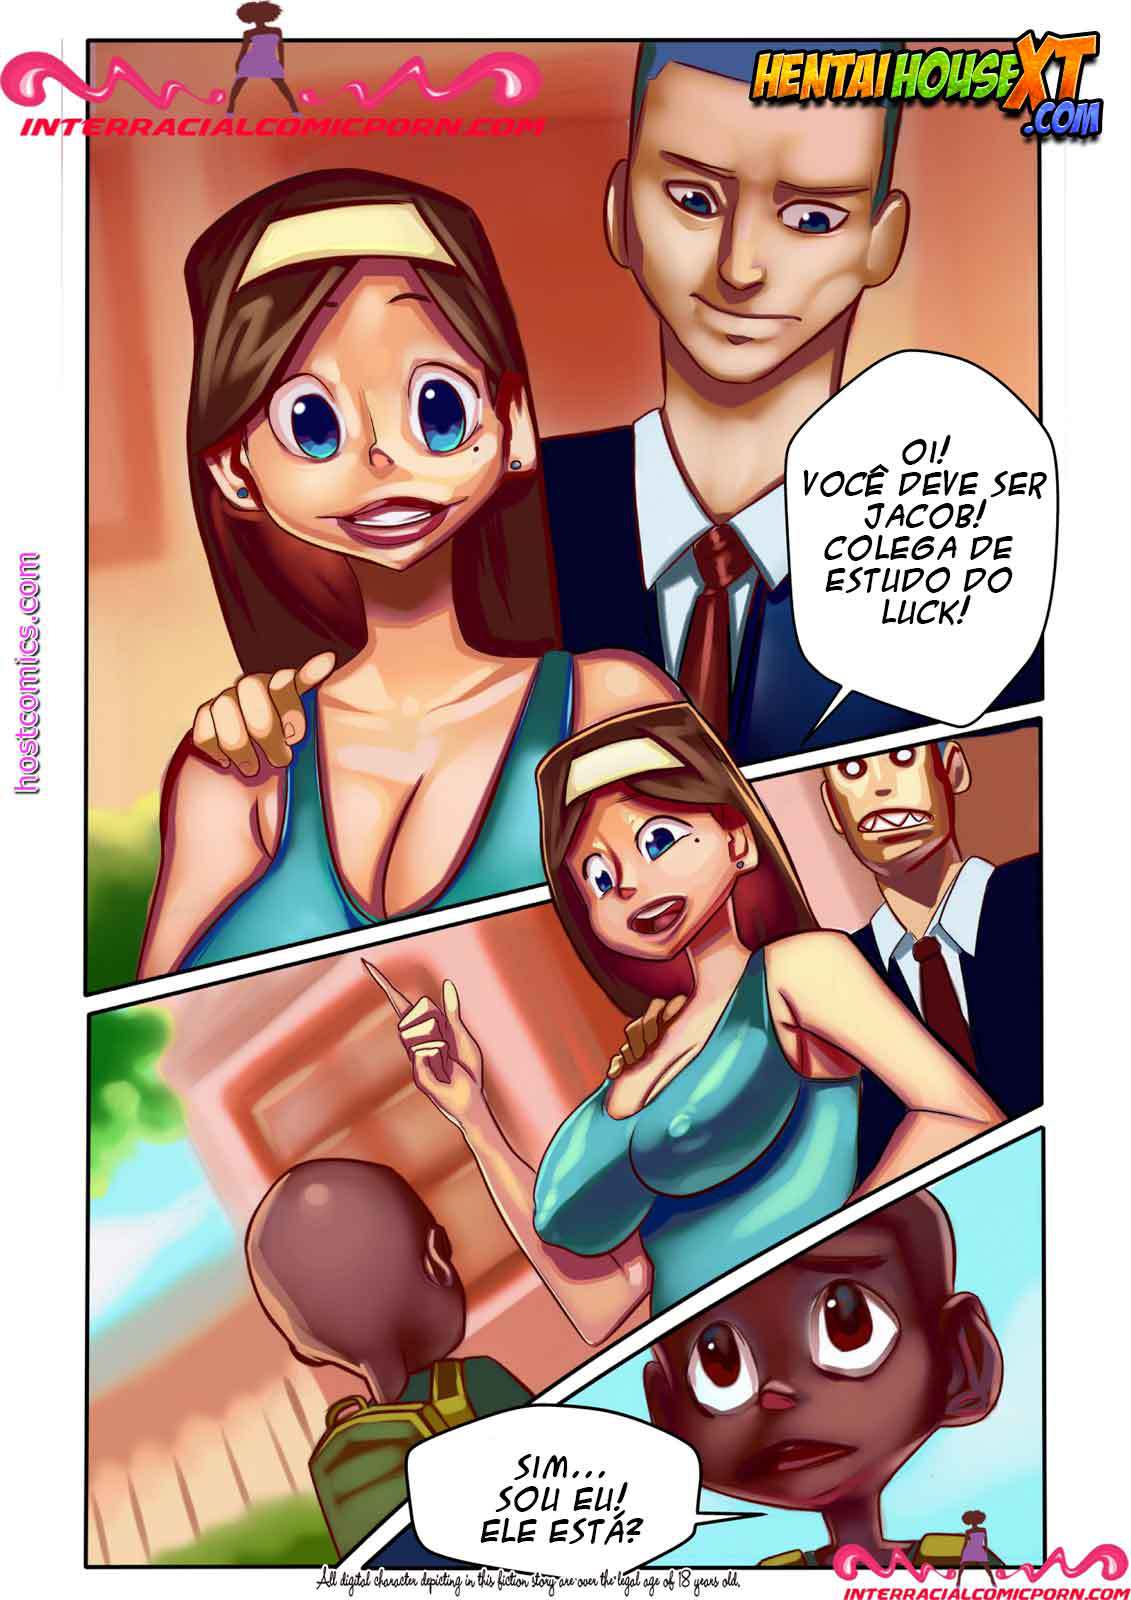 Moleque tarado - Quadrinhos Eroticos - Interracial